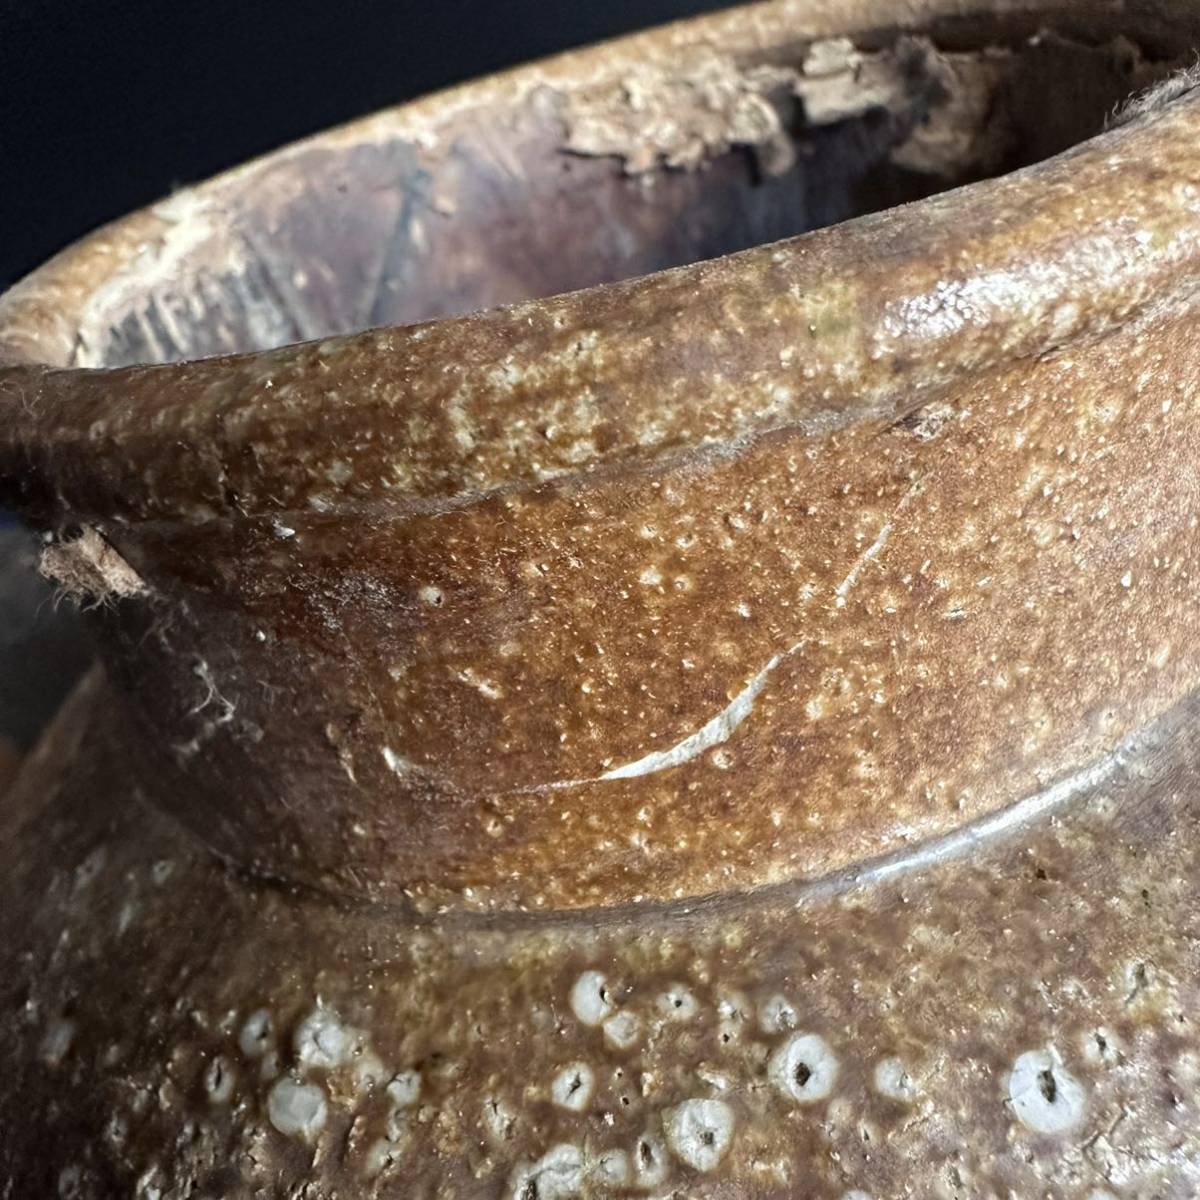 [KJ546] старый . Shigaraki . чай . дерево крышка украшение . вода бутылка ваза цветок входить высота примерно 24cm чайная посуда чай сиденье украшение антиквариат товар старый изобразительное искусство 